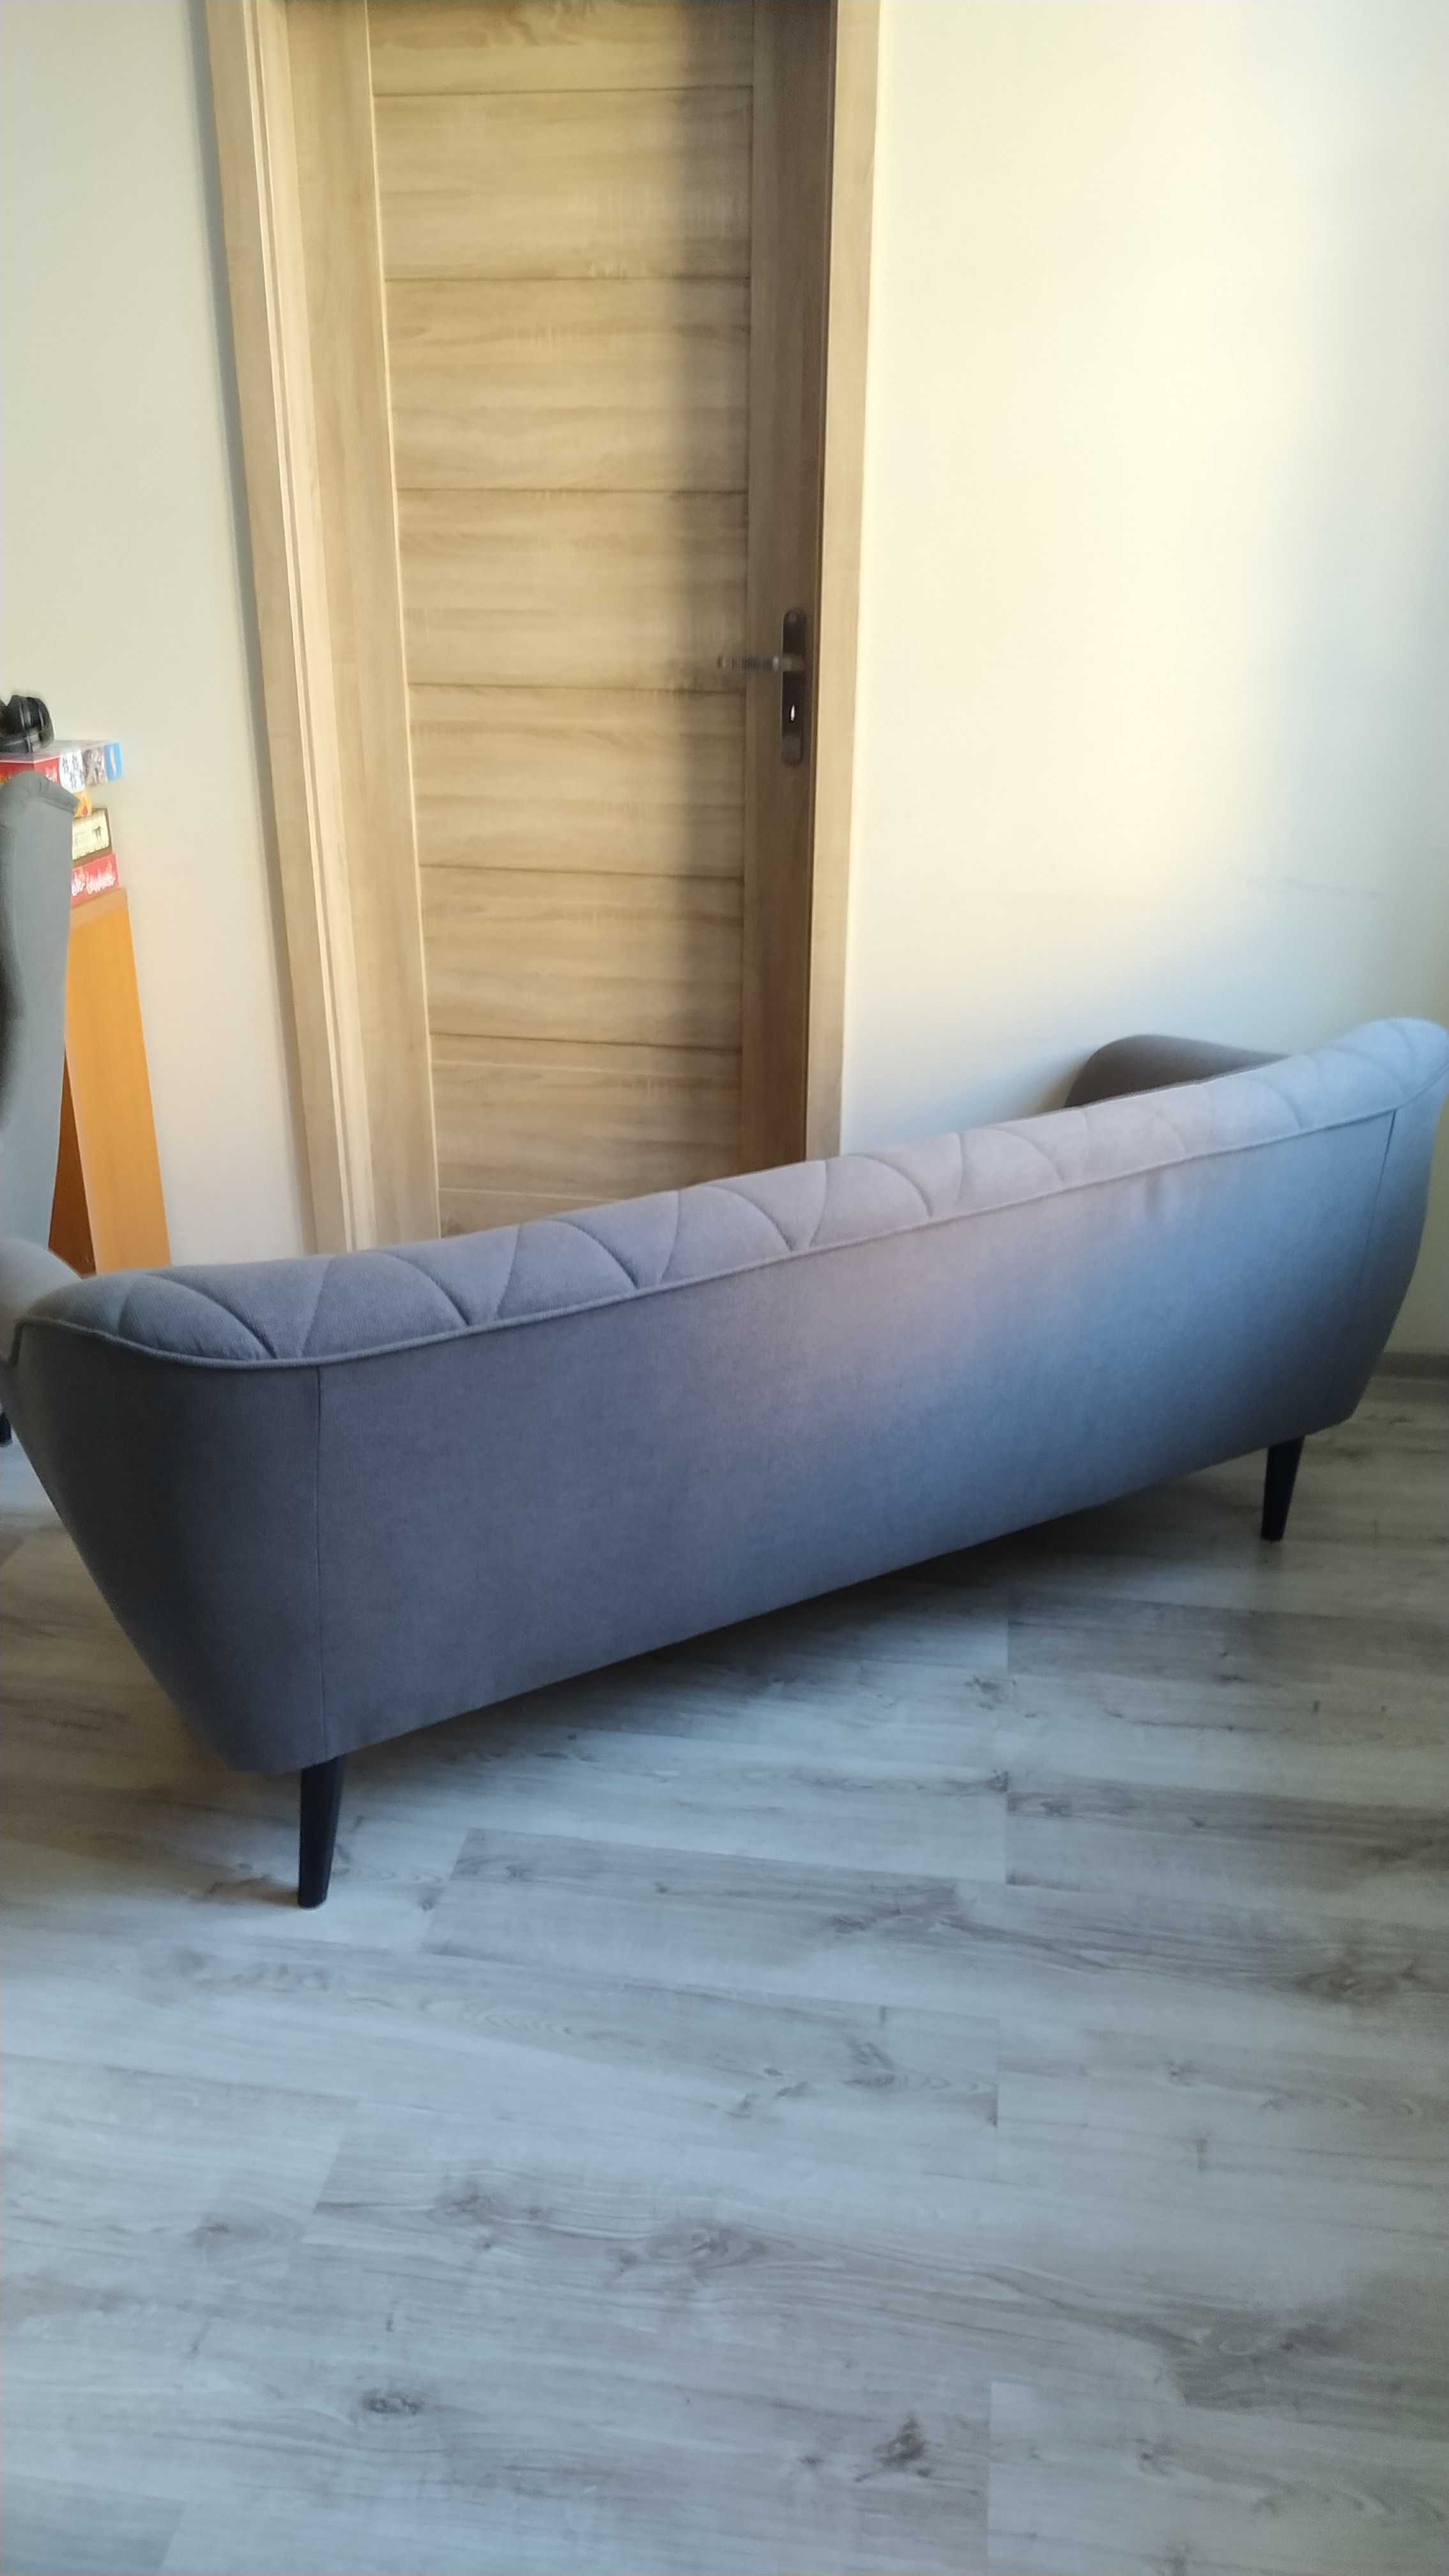 Sofa 3 os. 180 cm w stylu skandynawskim. Stan idealny